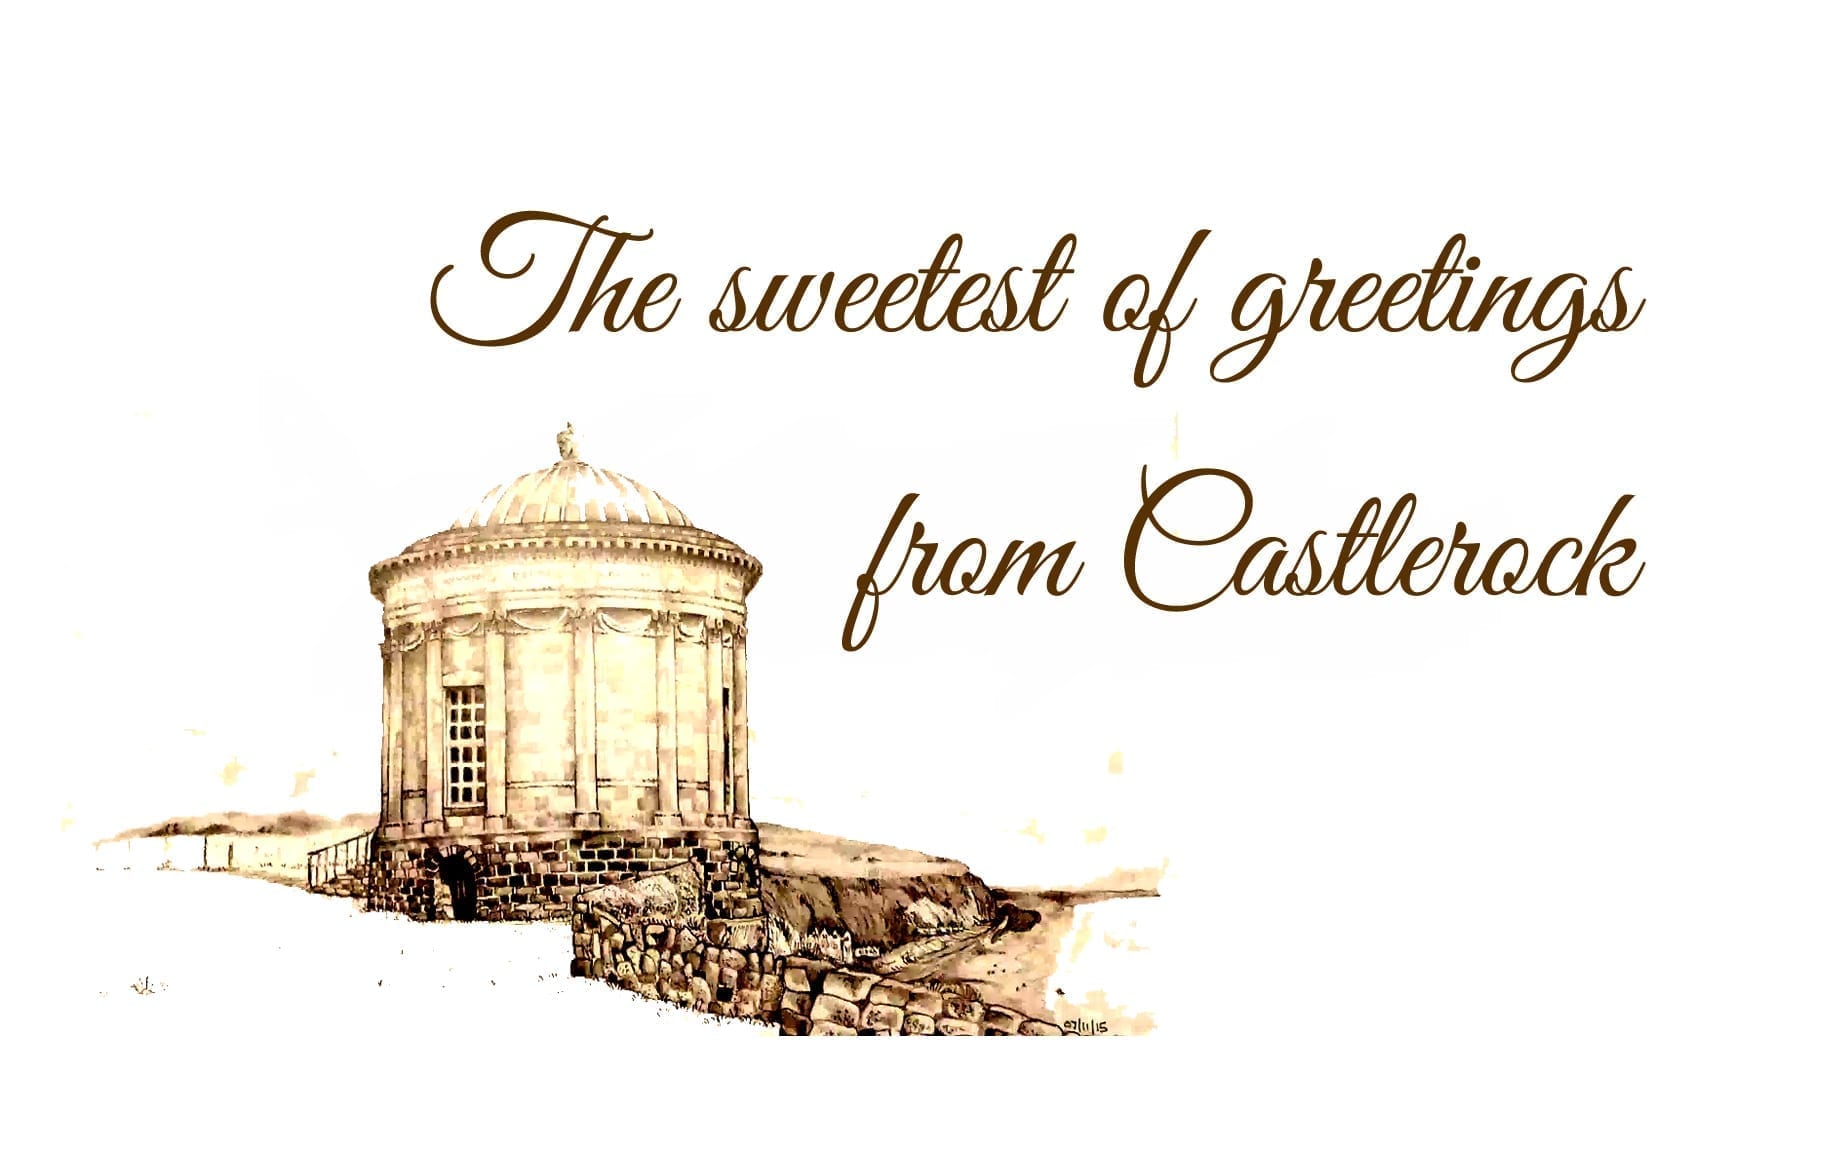 Sweetest of Greetings from Castlerock